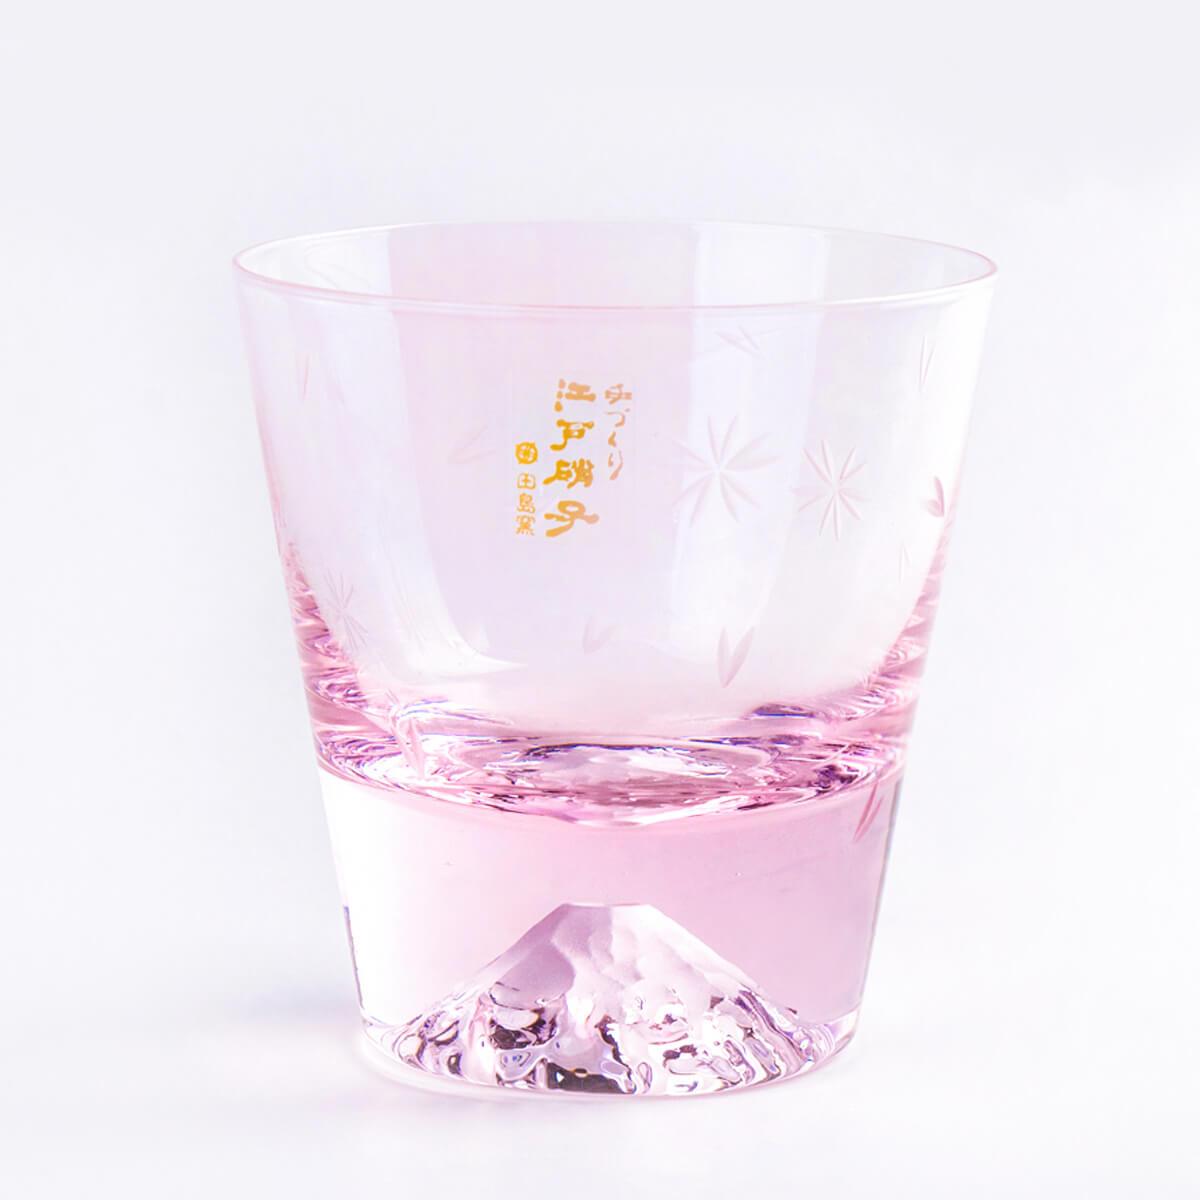 220cc【田島硝子富士山杯】愛情傘簽名 粉紅櫻花 (日本桐箱包裝) - MSA玻璃雕刻